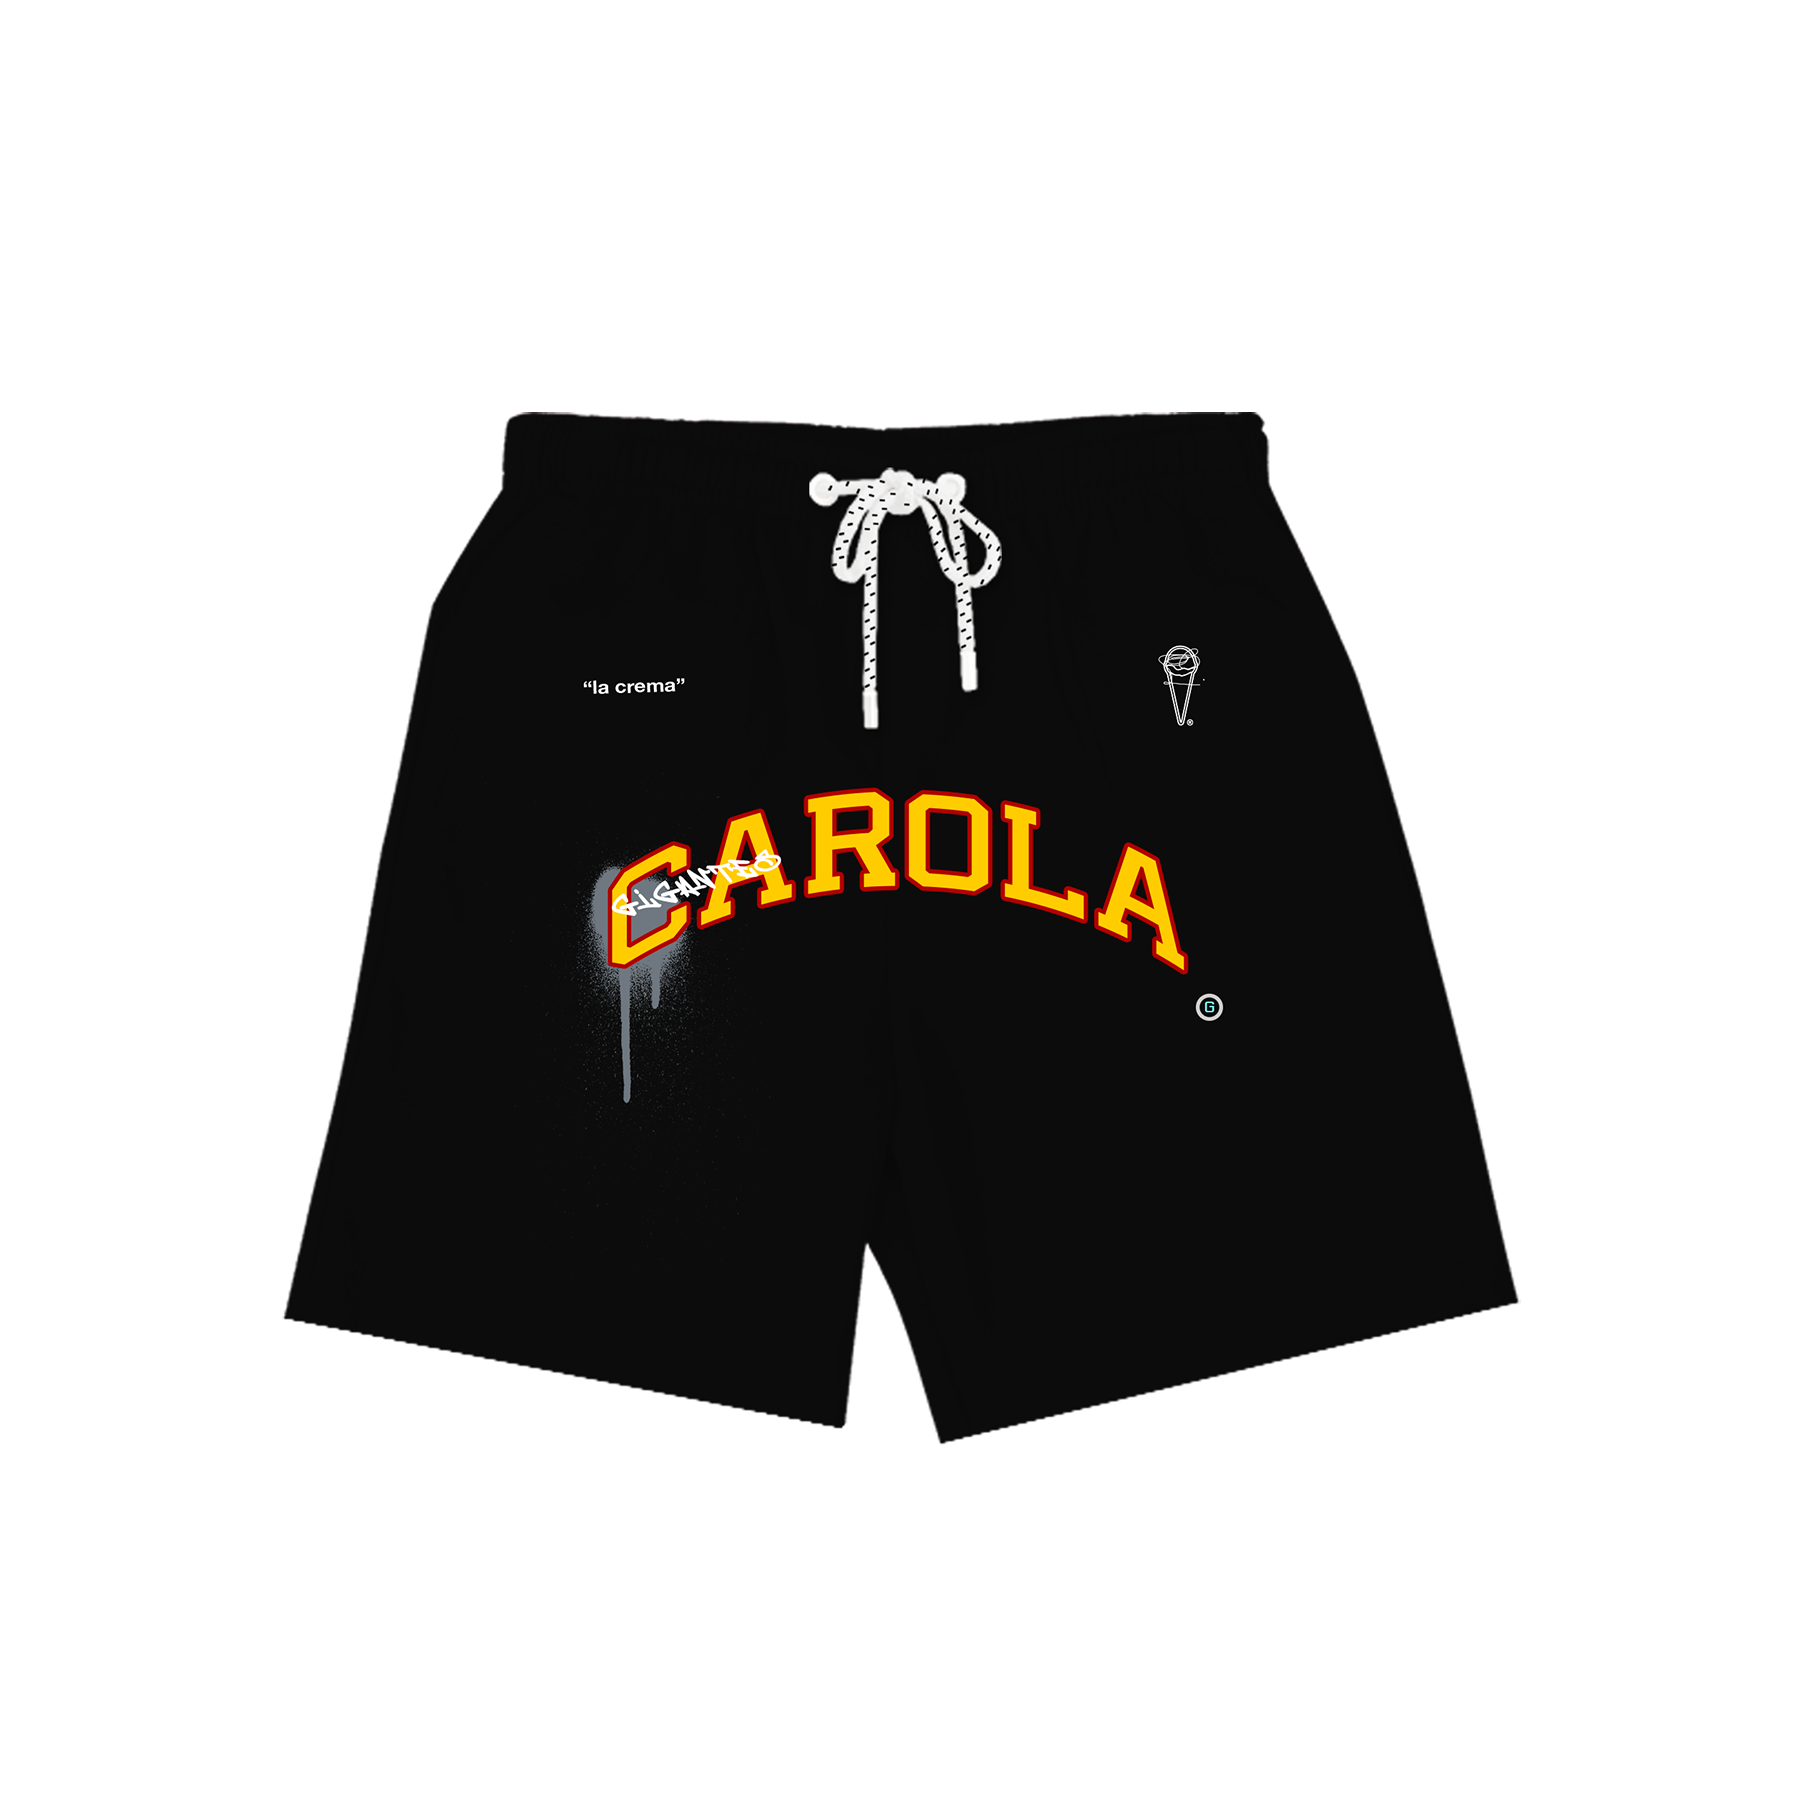 Carola trucker hat – Carolinagigantes